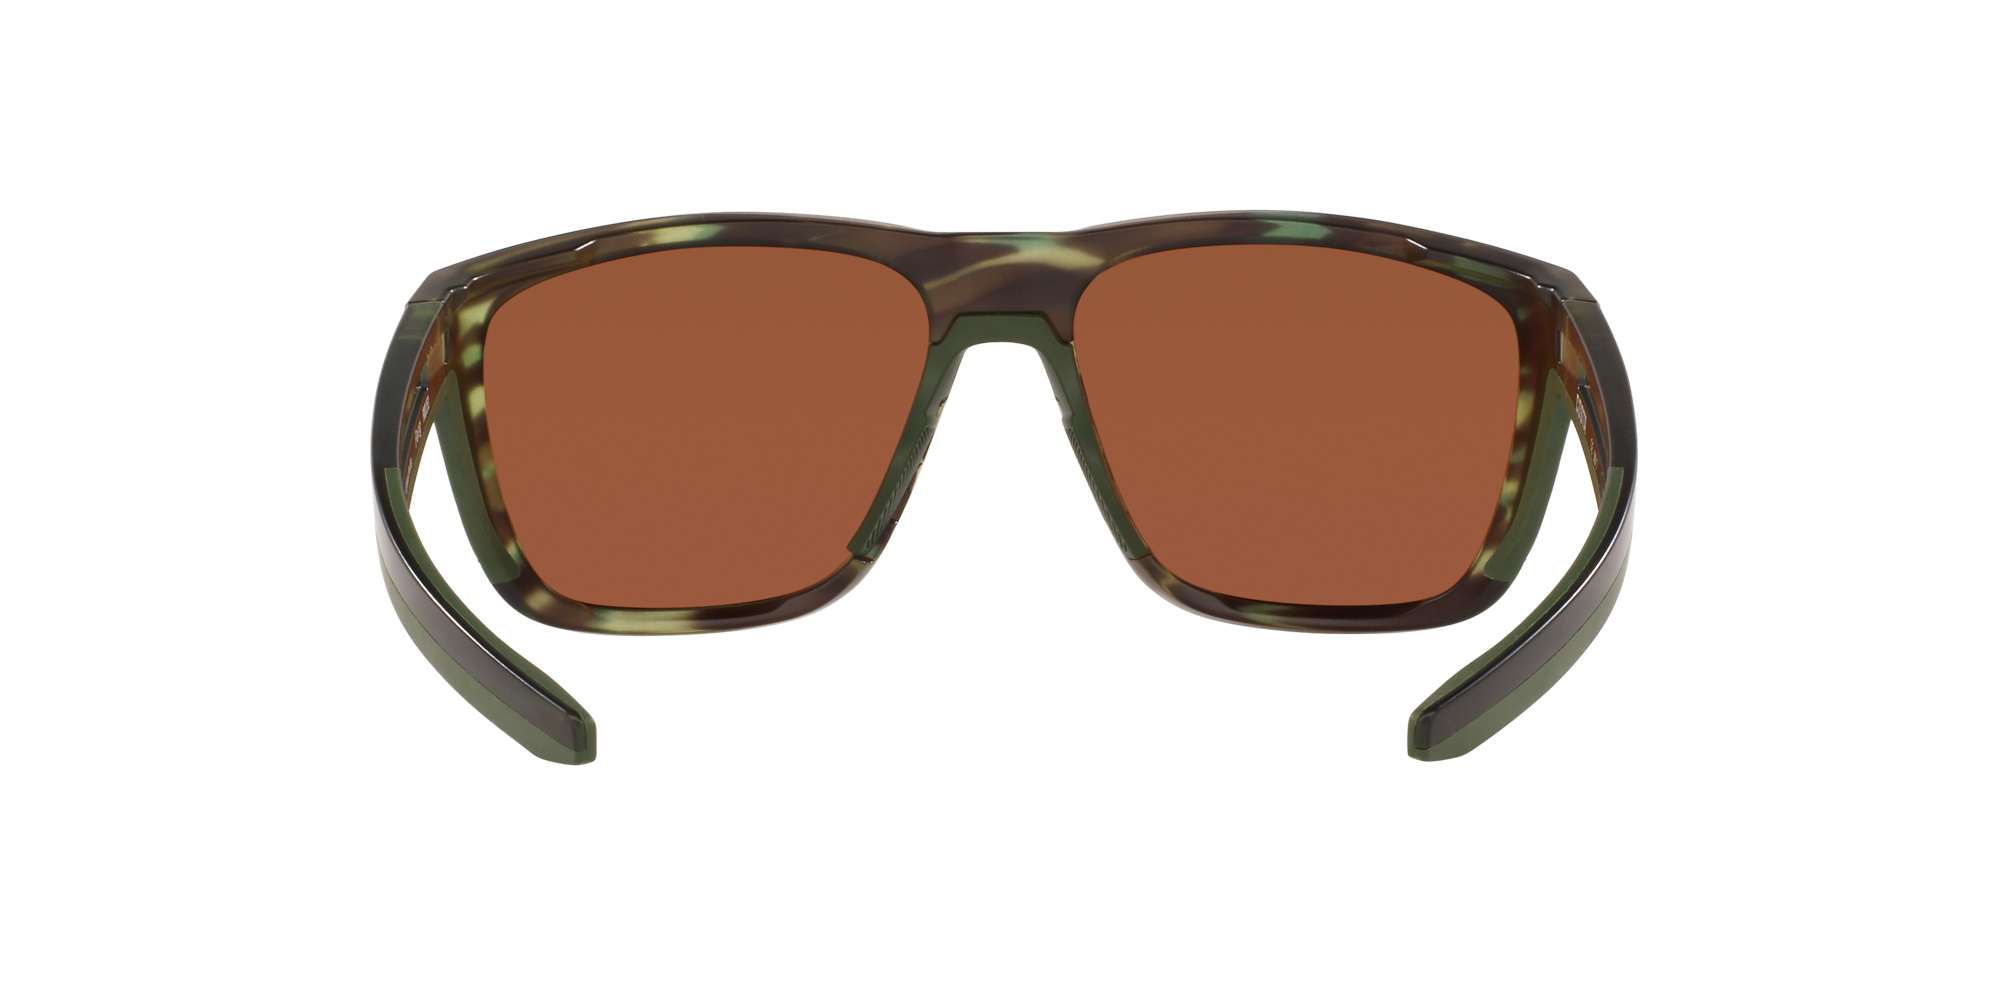 Ferg Polarized Sunglasses in Green Mirror | Costa Del Mar®